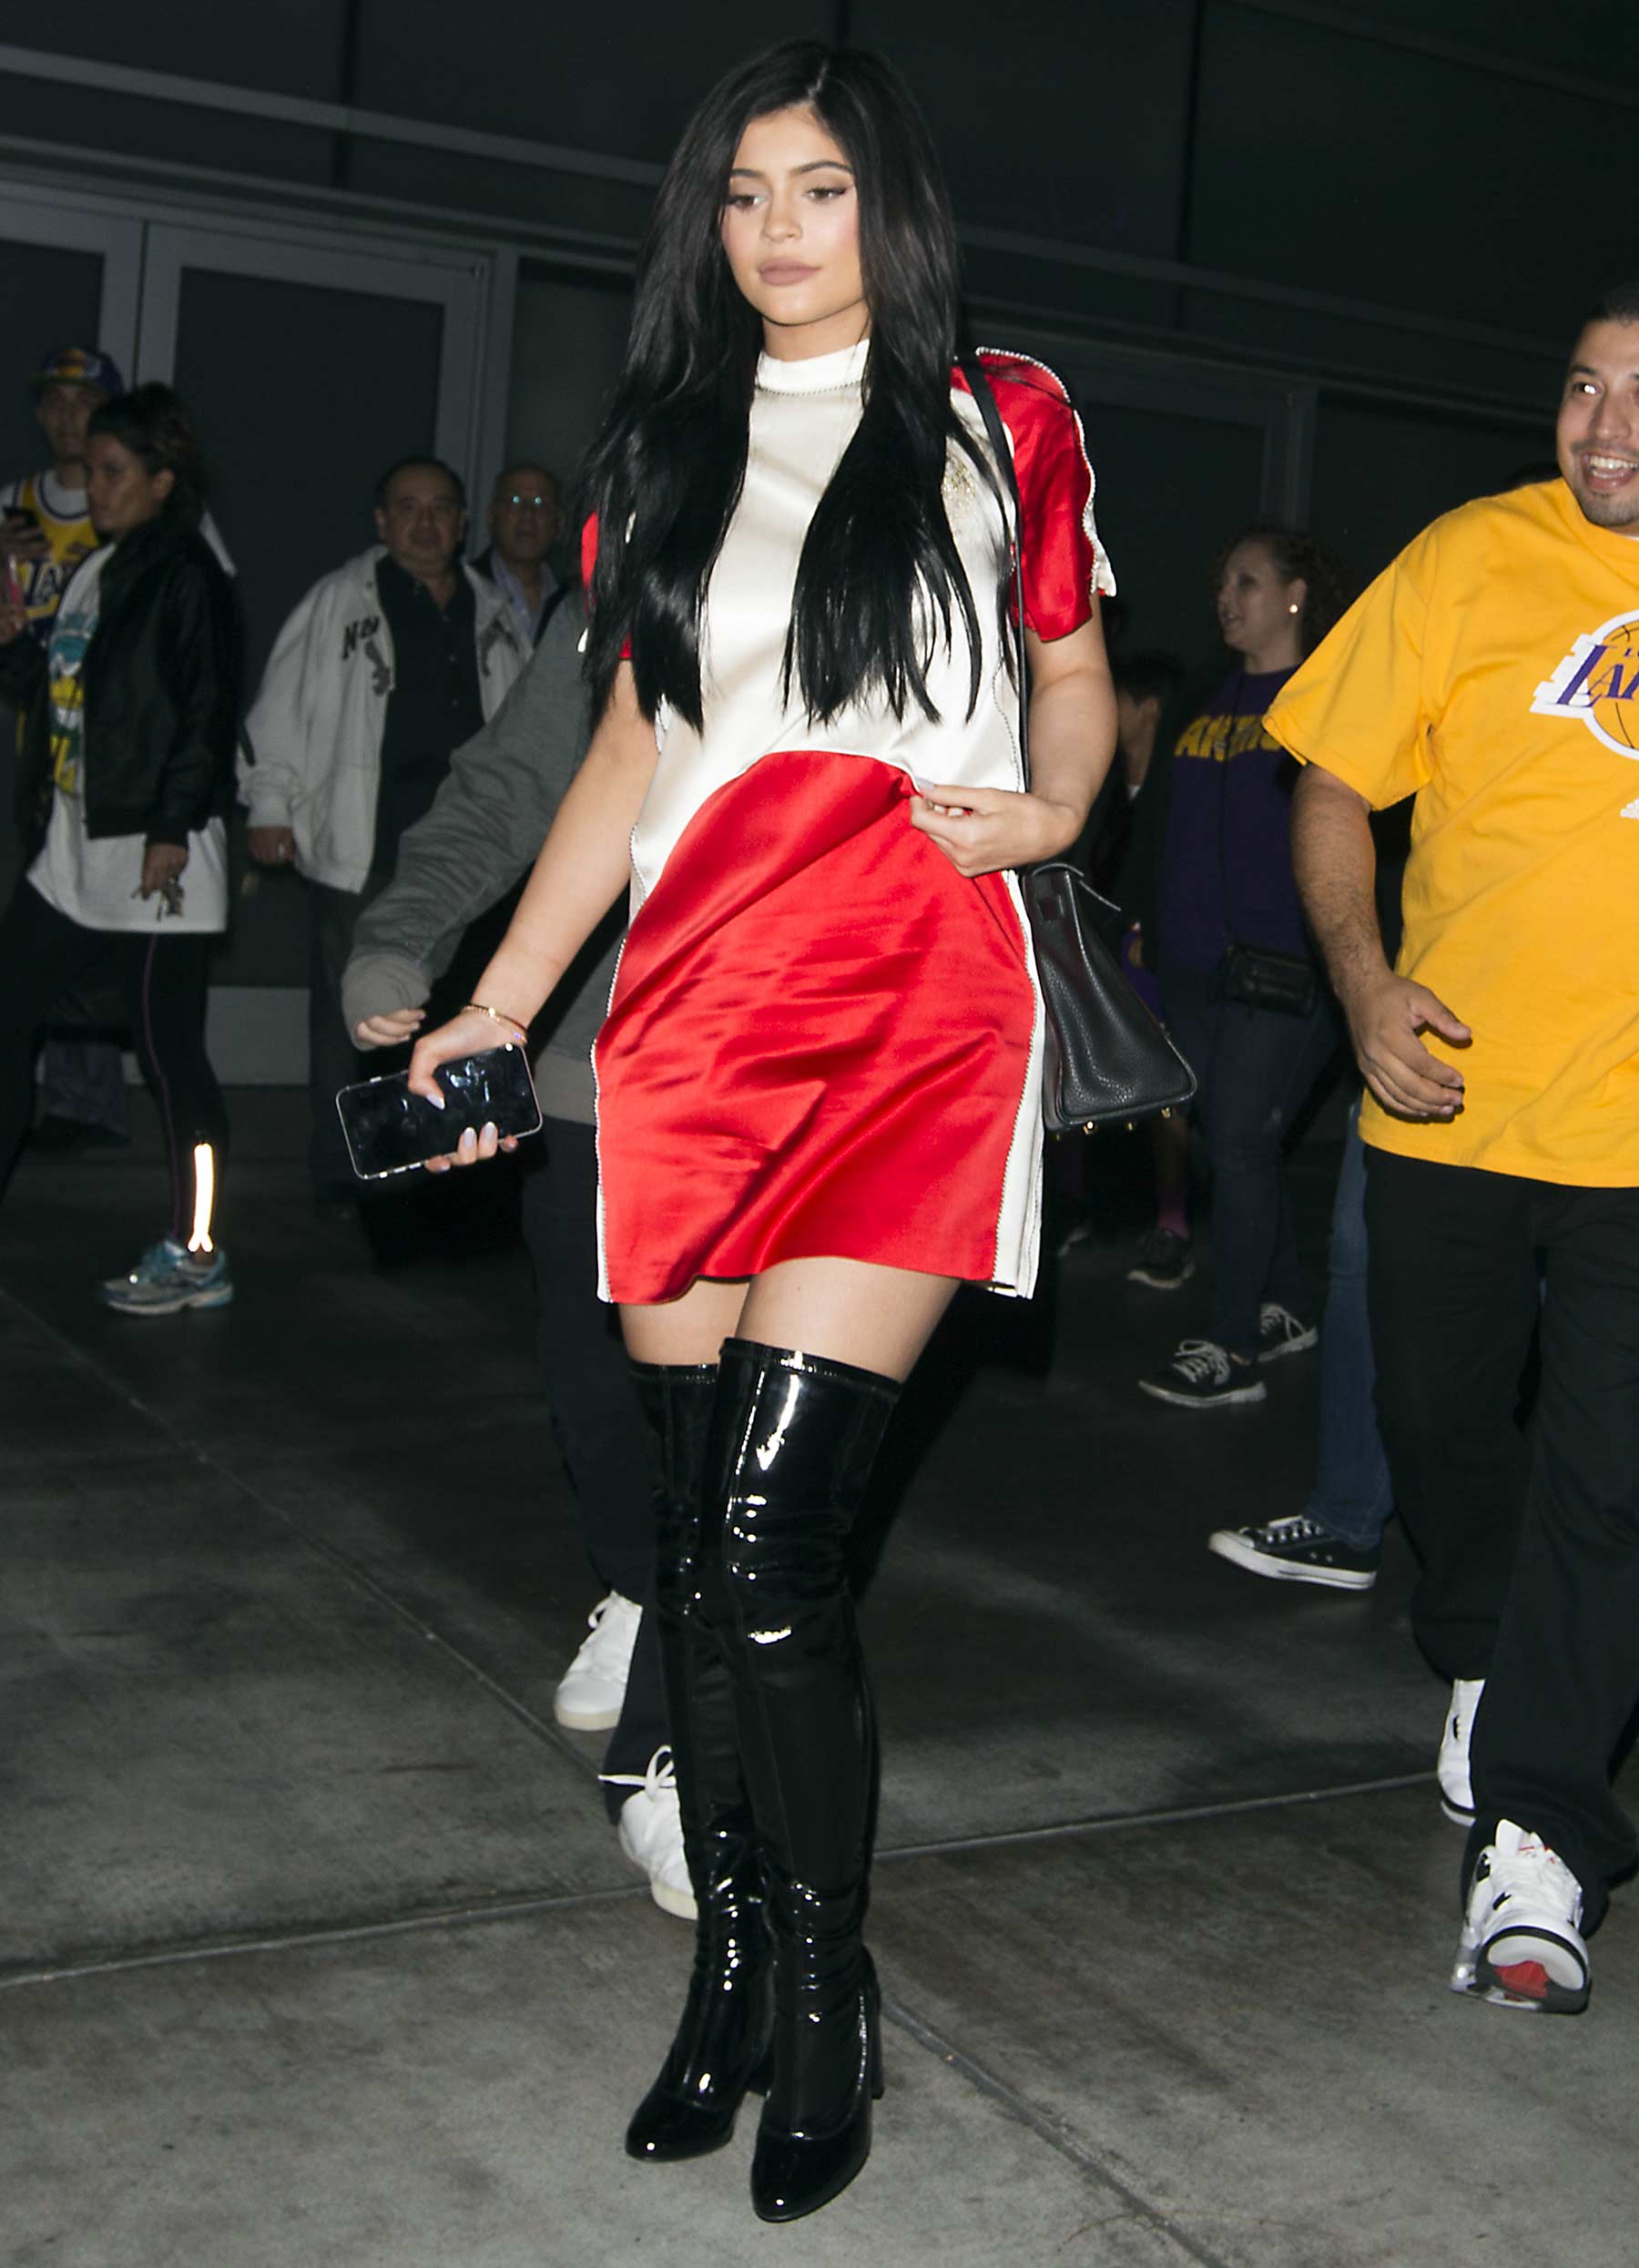 Kylie Jenner leaving the Staples Center